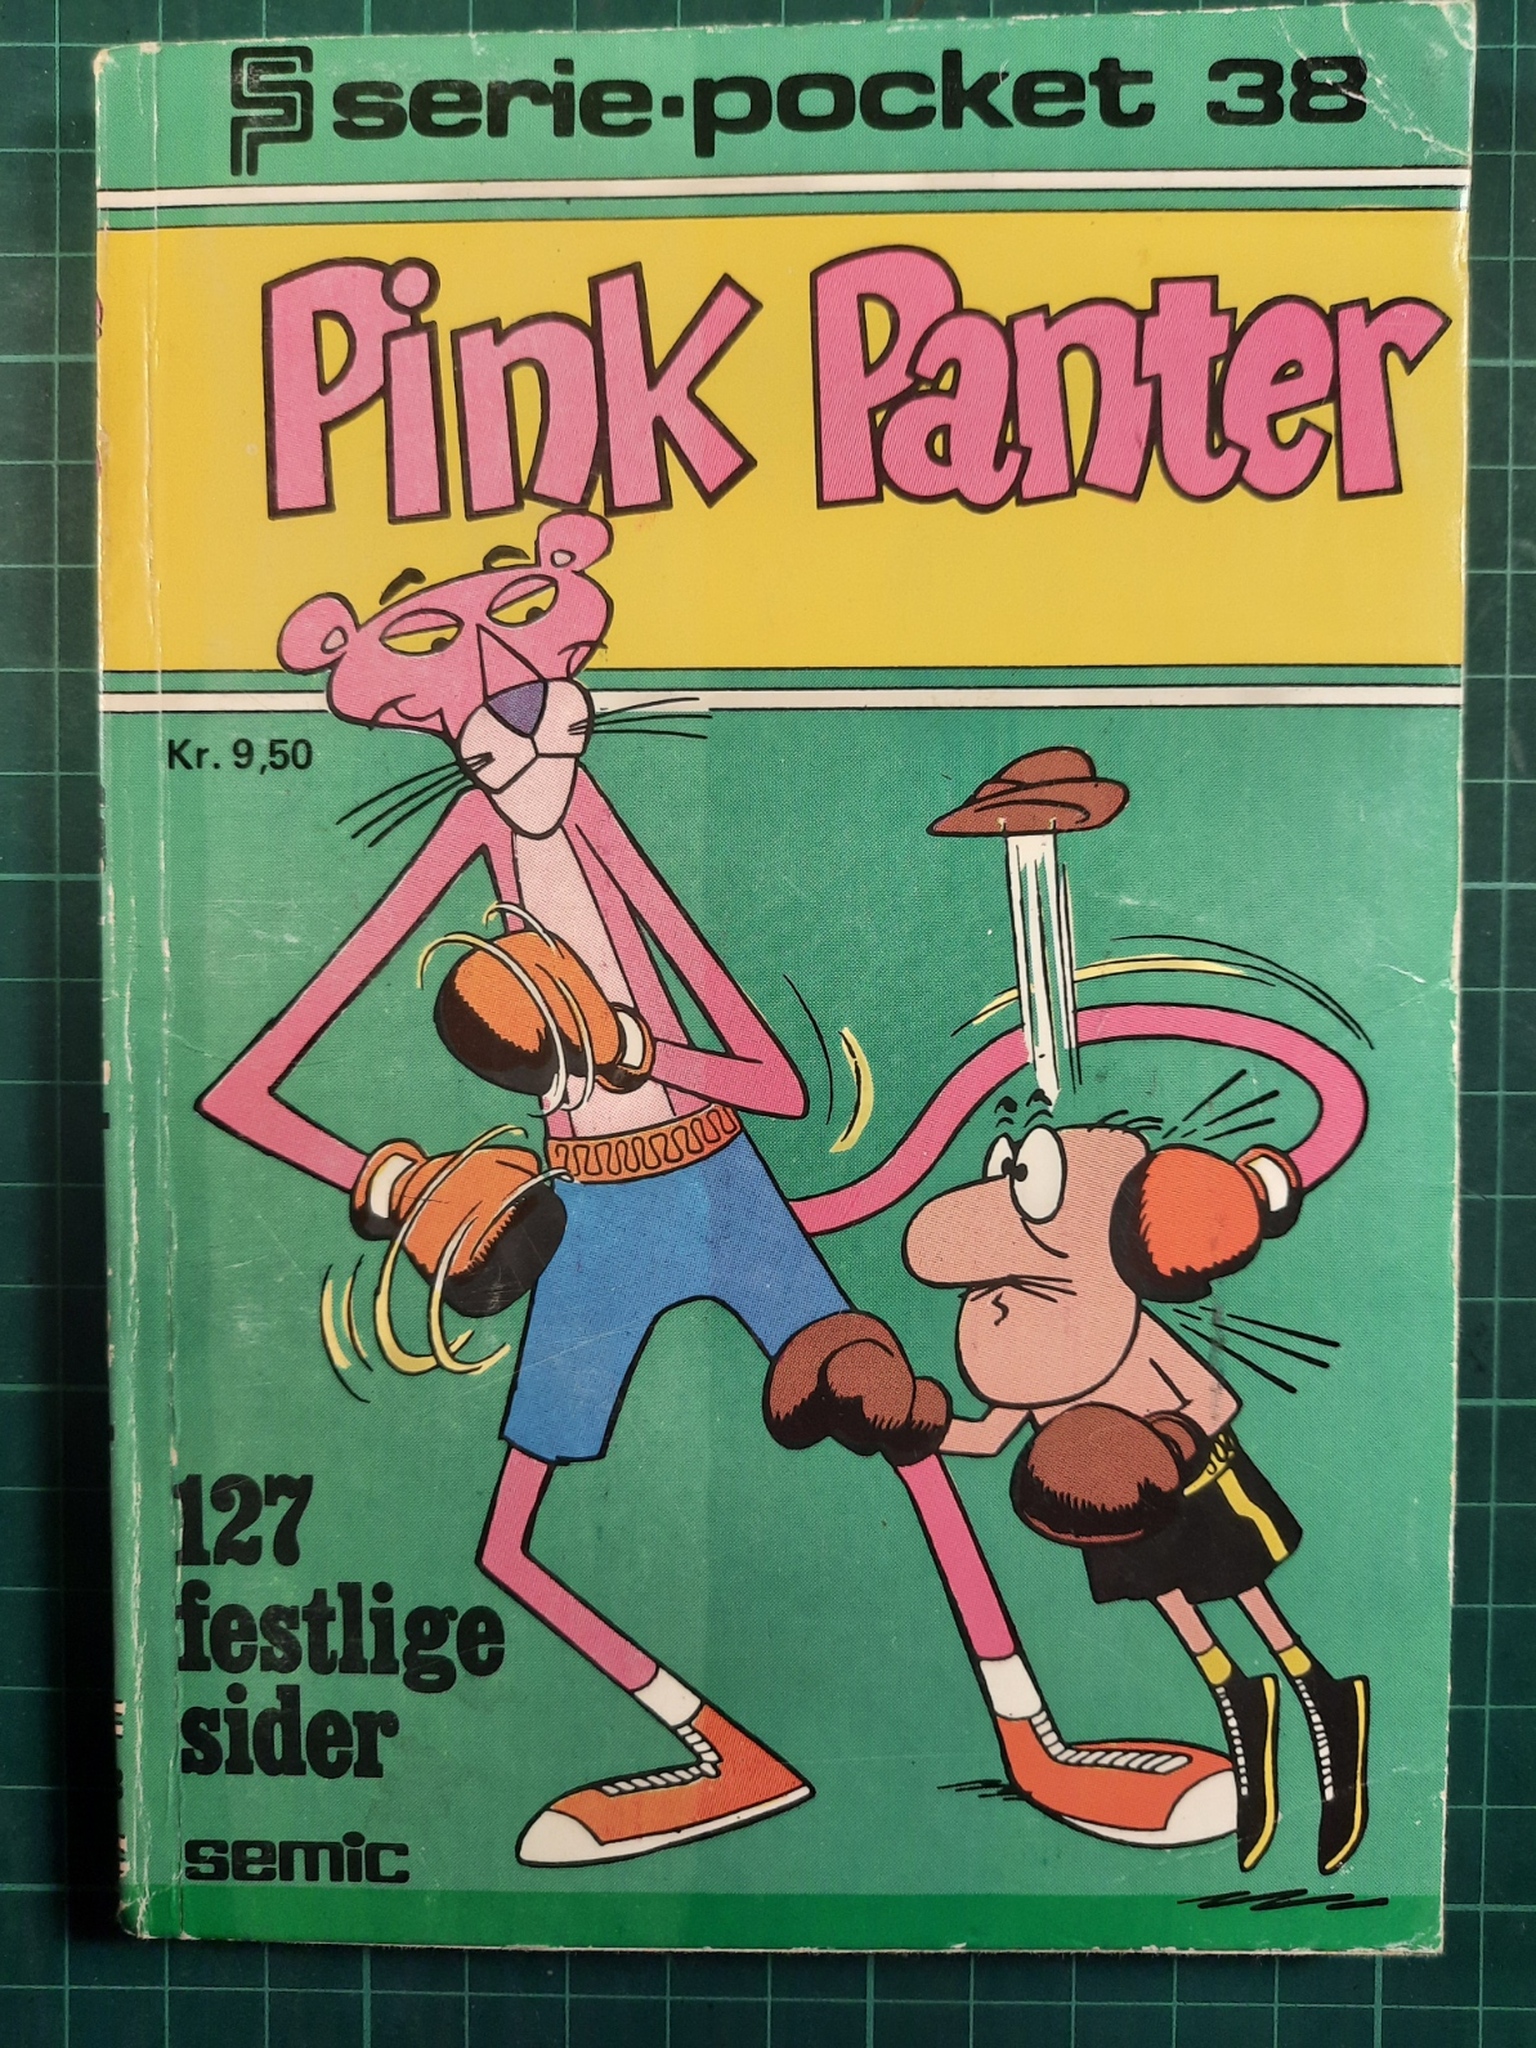 Serie-pocket 038 : Pink Panter